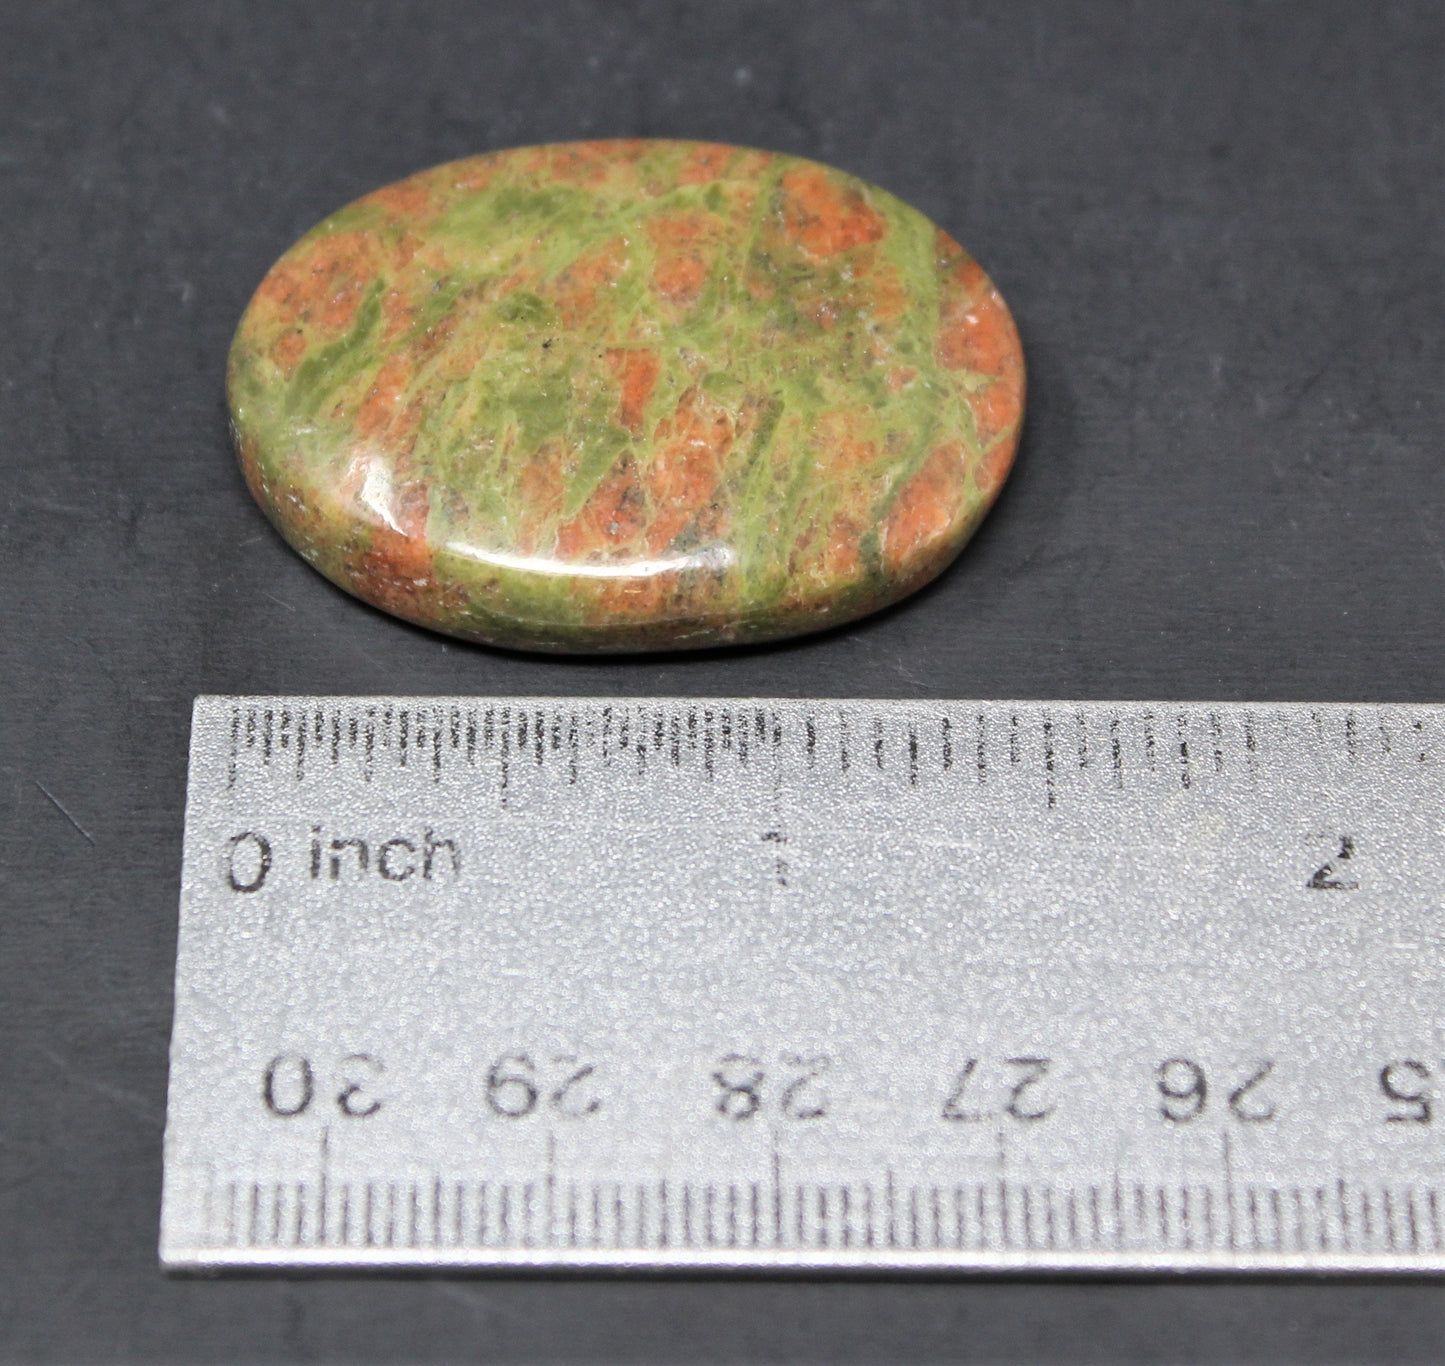 Polished Unakite Pocket Stone